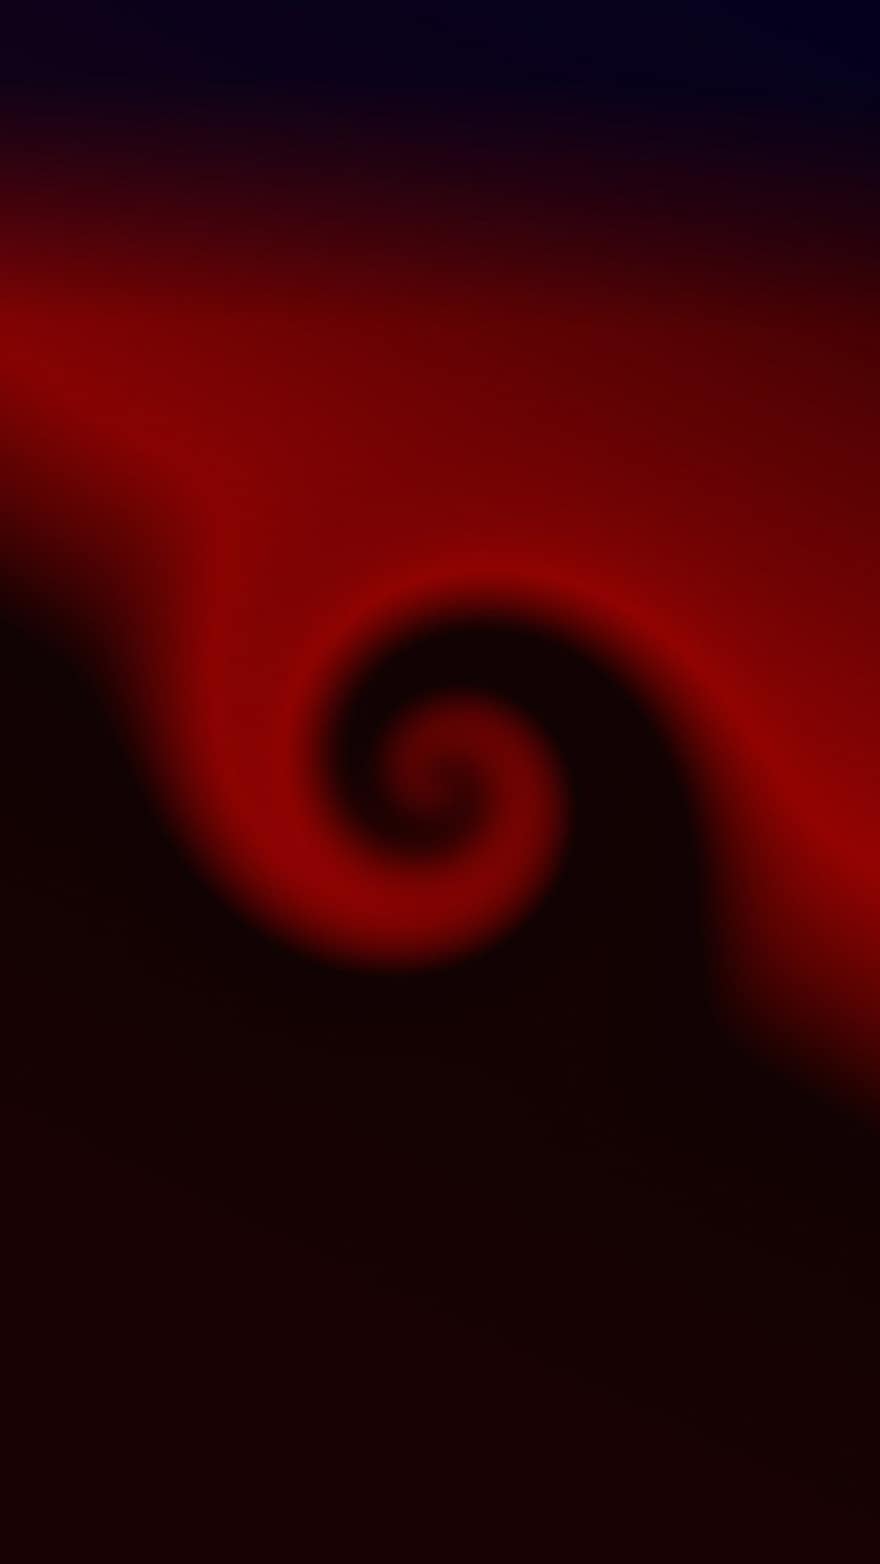 Spiral-, Hintergrund, schwarz, rot, abstrakt